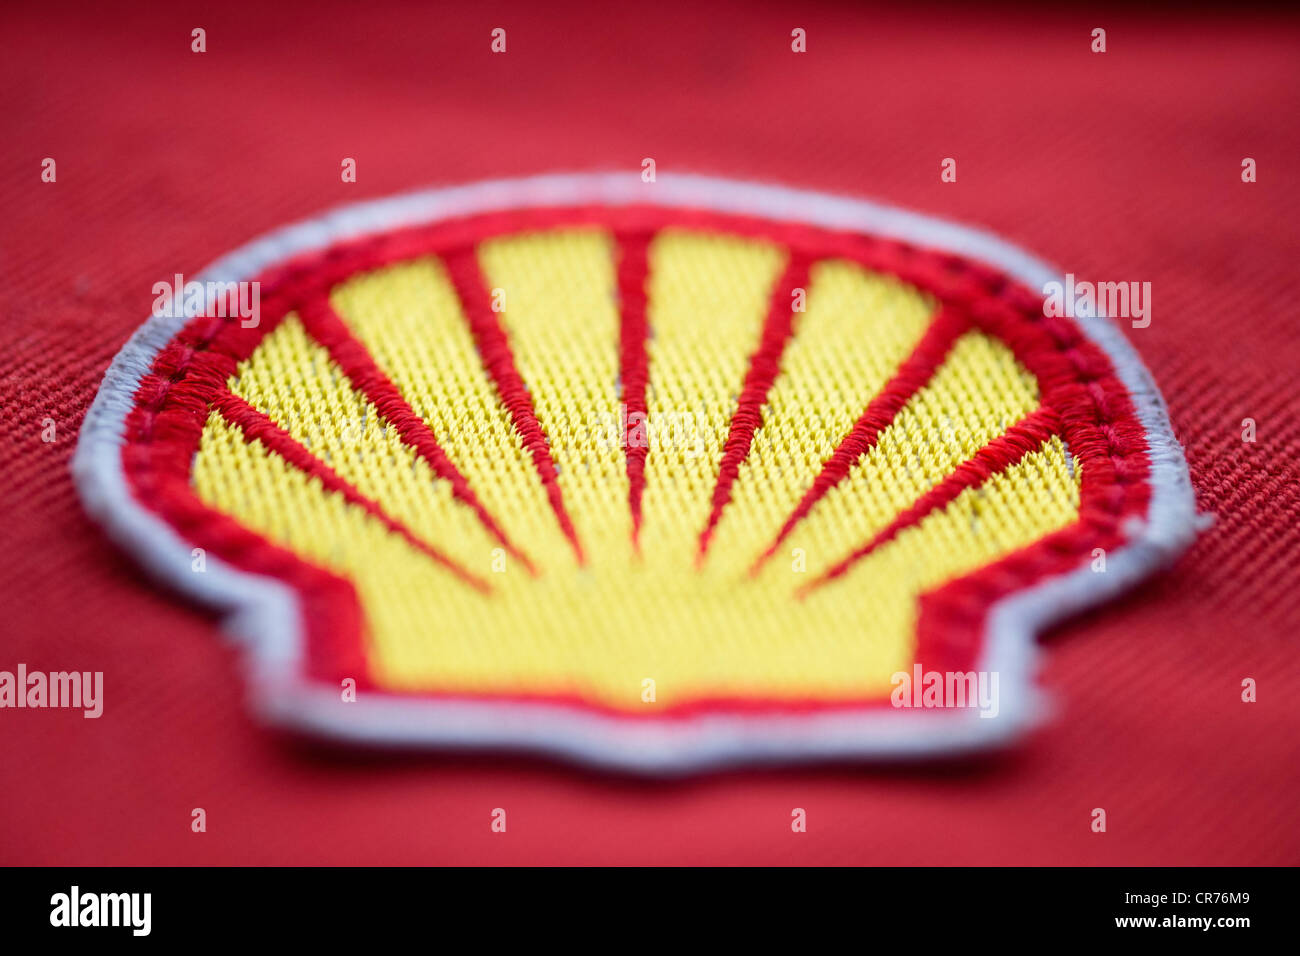 Dettaglio del panno patch logo sulla tuta di sicurezza del lavoratore di Royal Dutch Shell Oil Company. Foto Stock